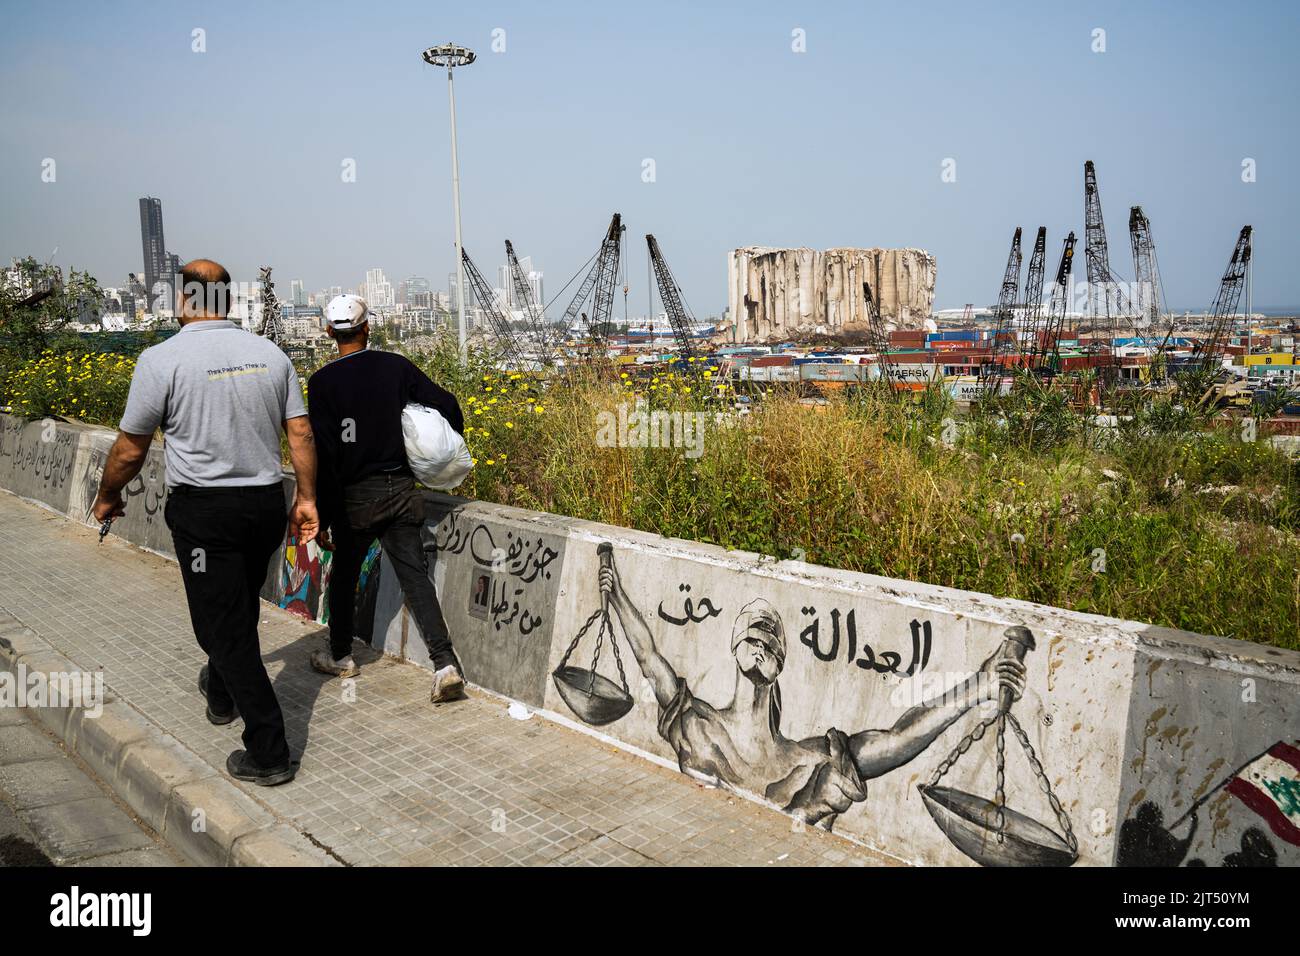 Beirut, Libanon: Graffiti an der Hafenmauer zeigt die zerstörten Getreidesilos der massiven Explosion von 2.750 Tonnen Ammoniumnitrat, die im Hafen der Stadt gelagert wurden und am 8. Und 4/2020 den Hafen und die Stadt zerstörten Stockfoto